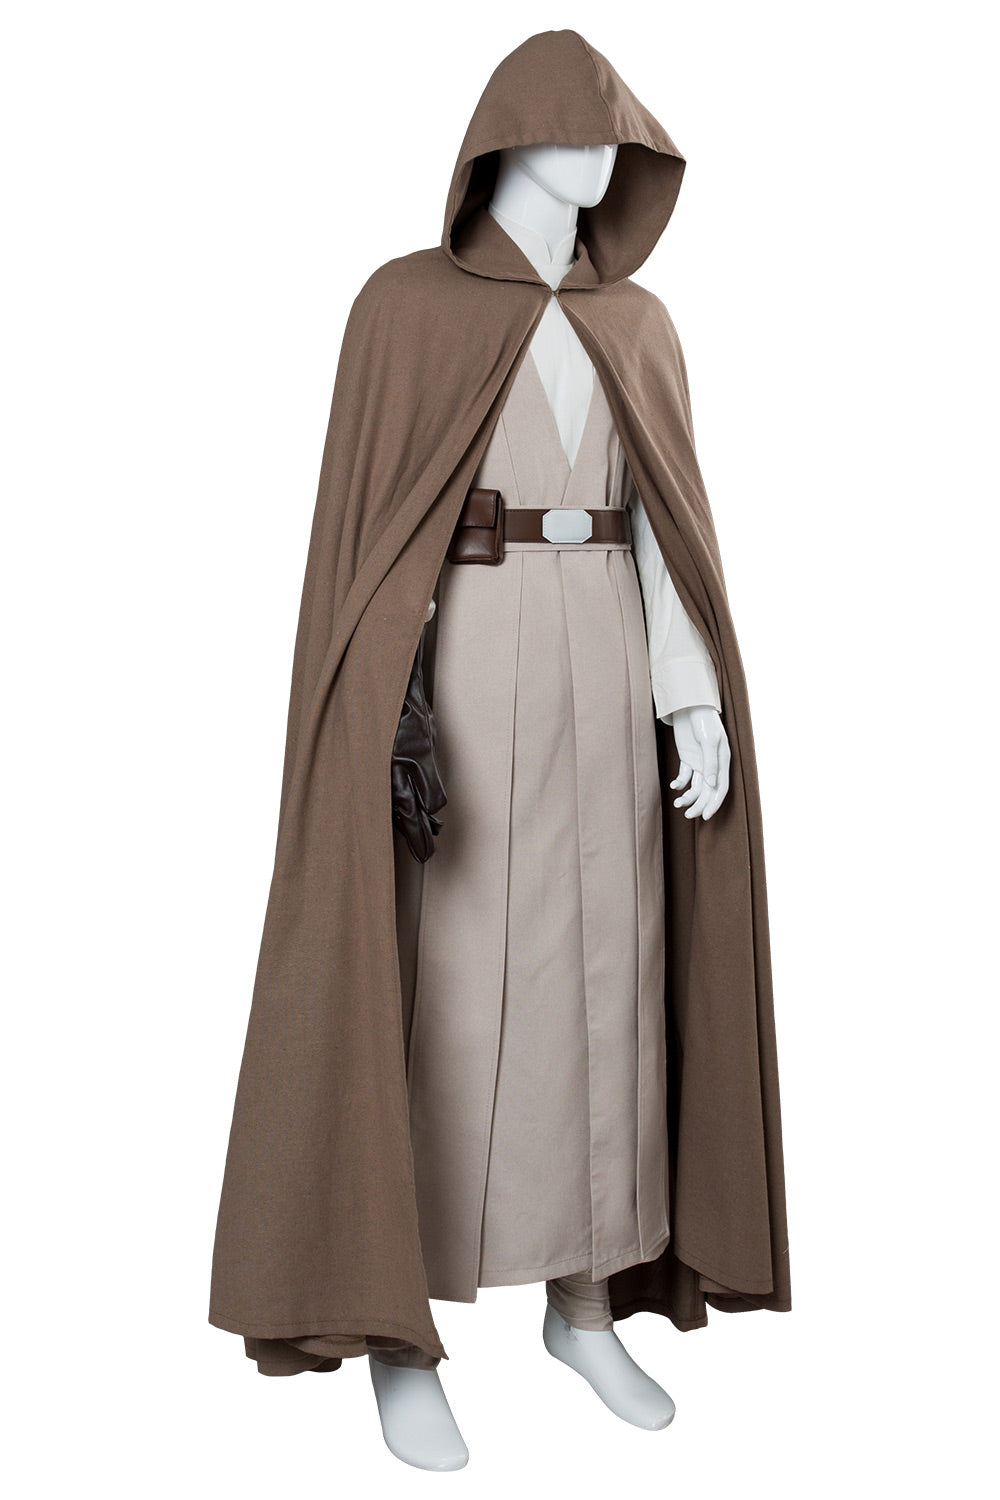 Die Letzten Jedi Luke Skywalker Cosplay Kostüm